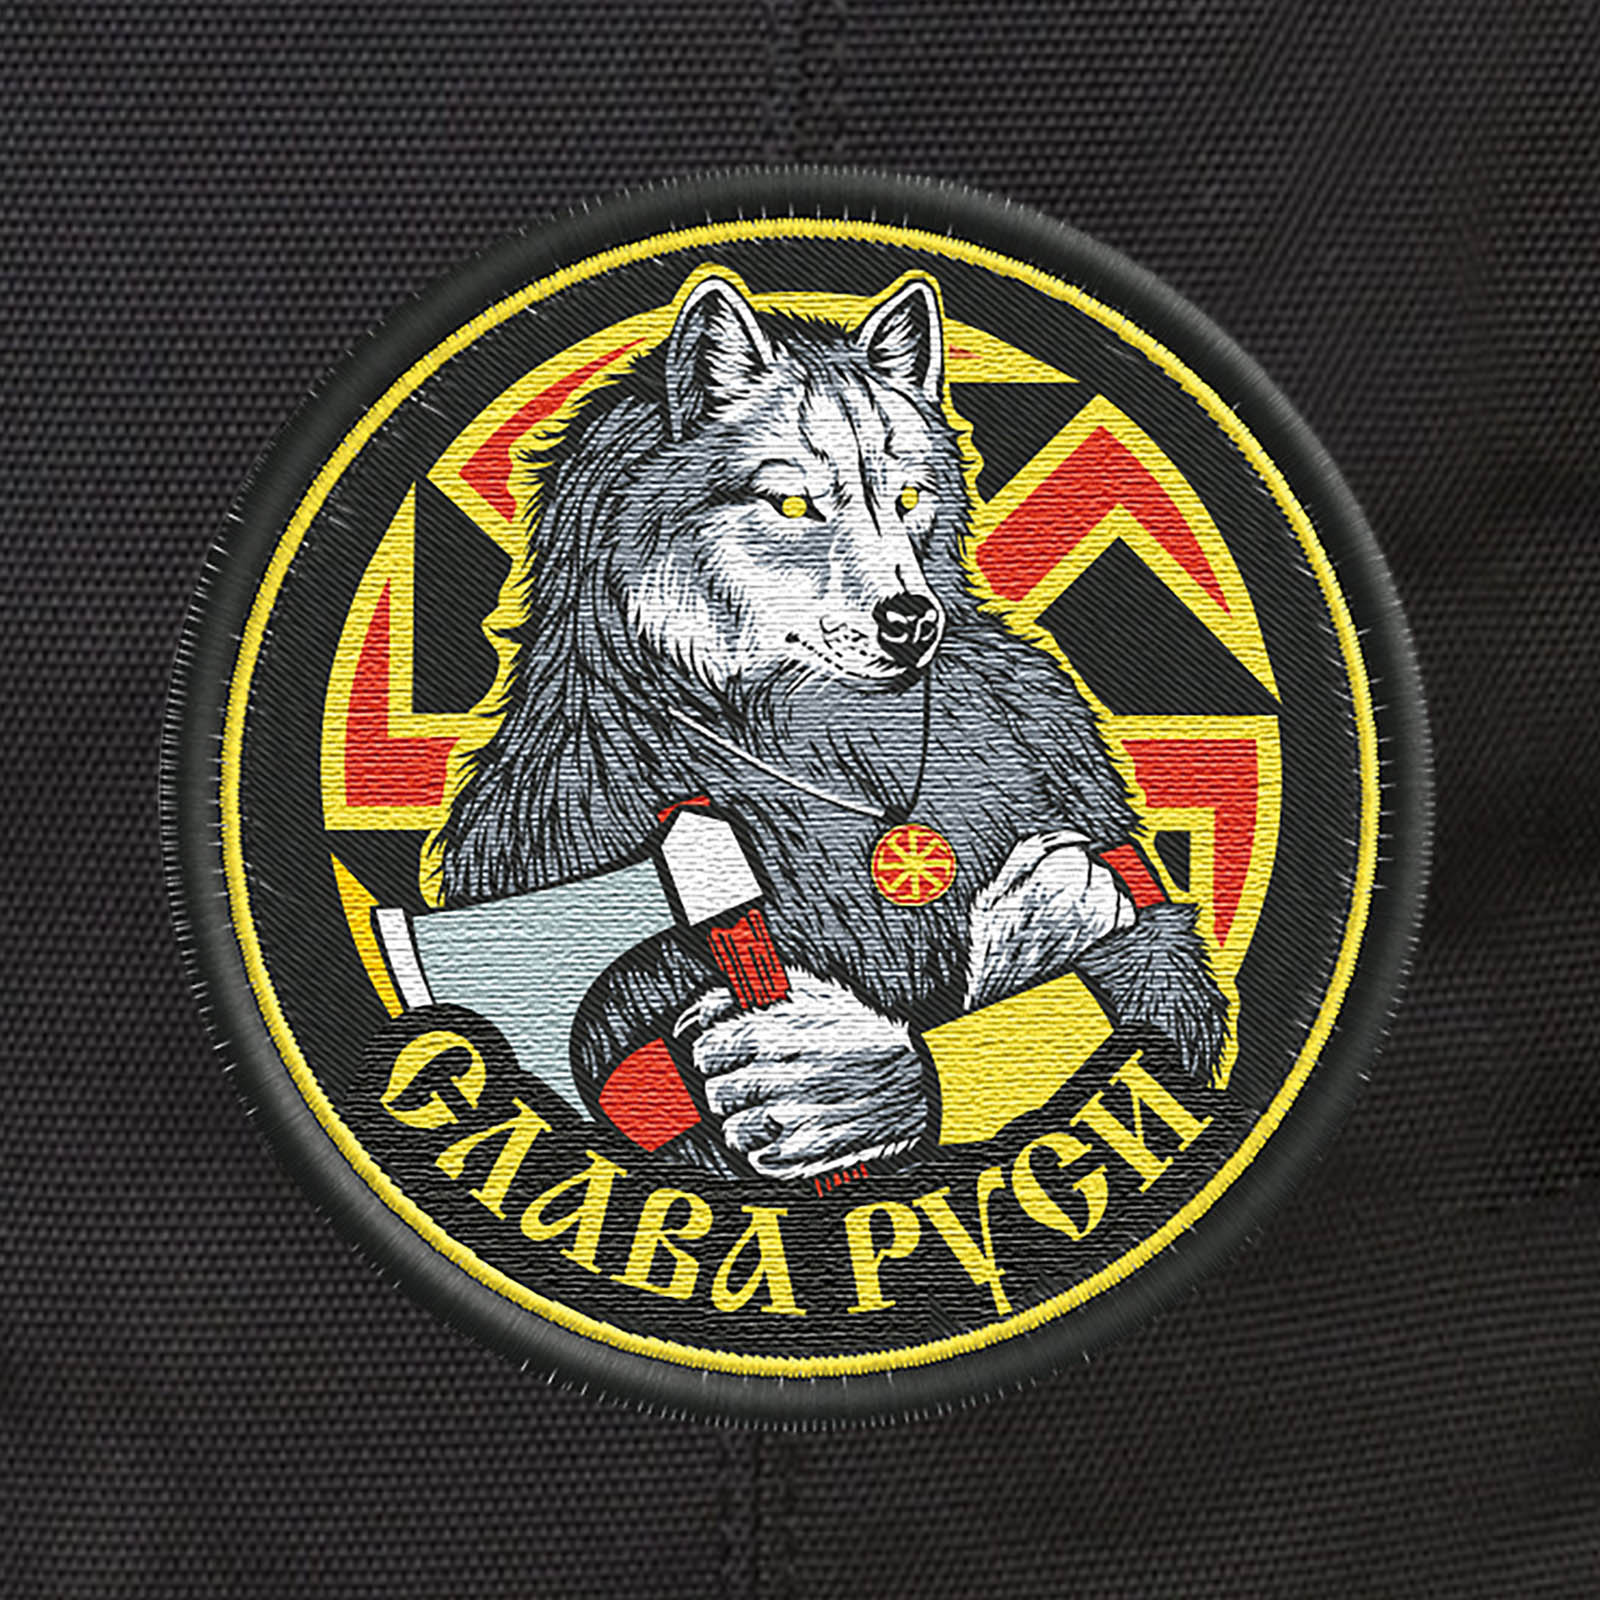 Зачетный черный рюкзак с нашивкой Слава Руси (29 л) 